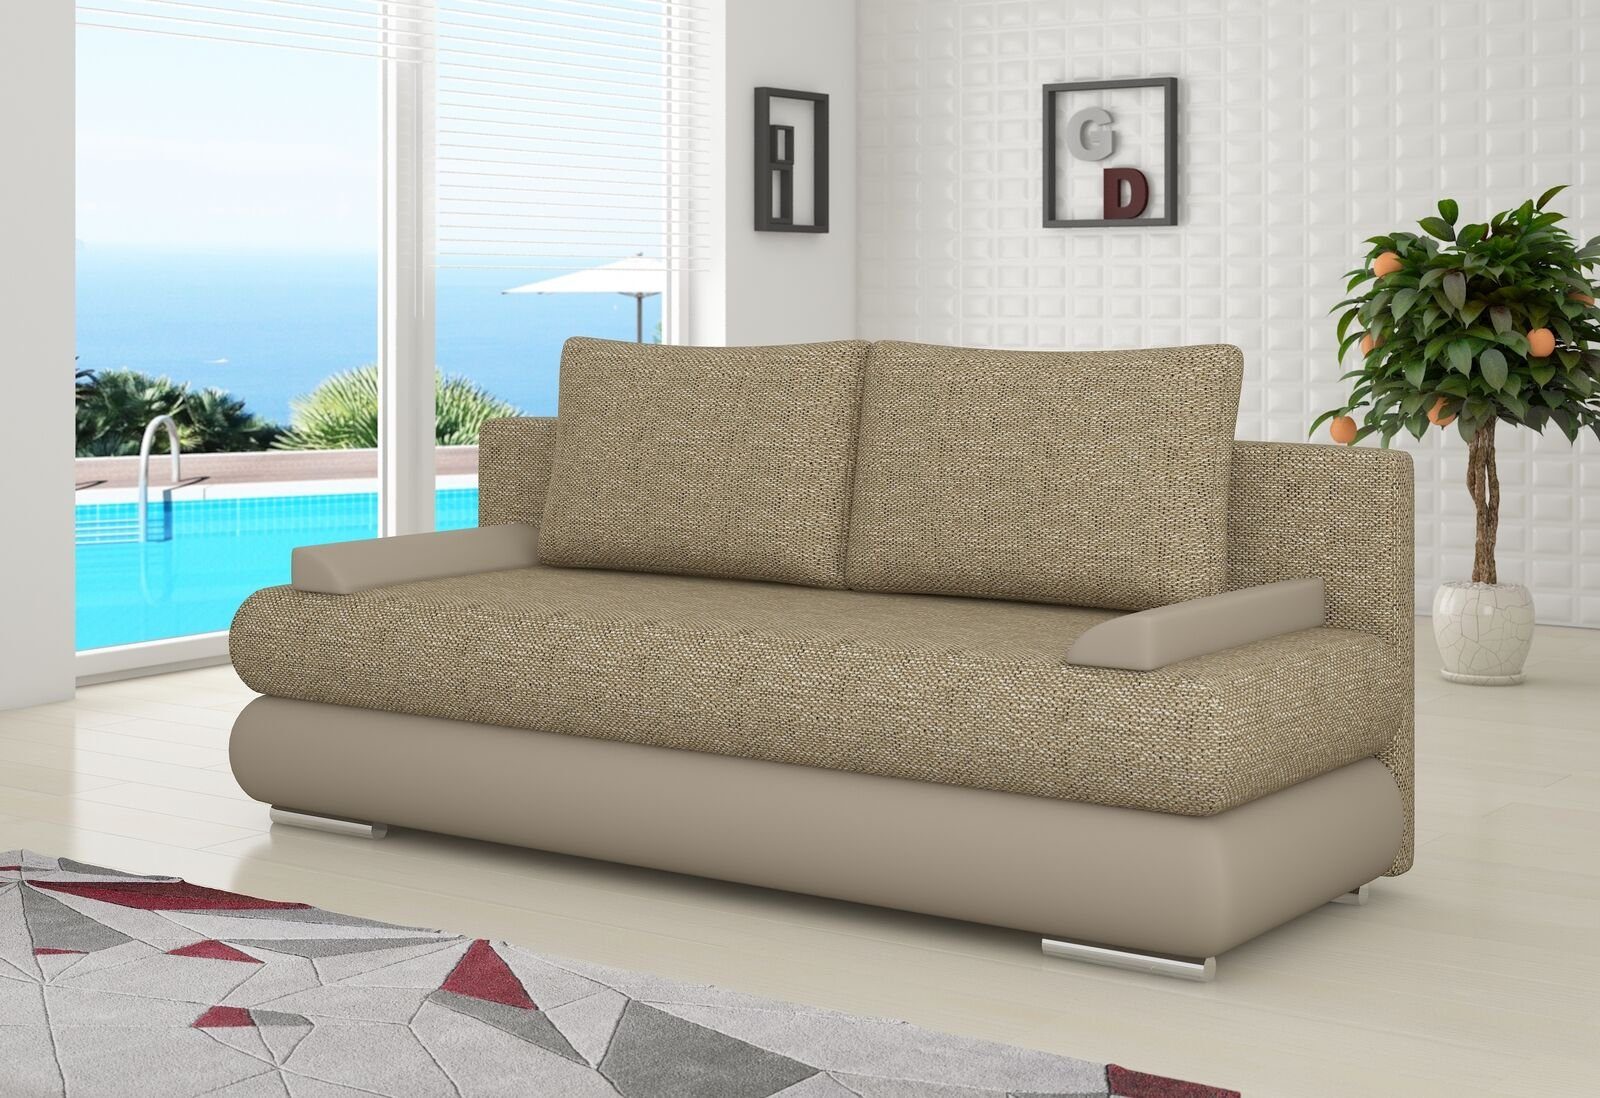 JVmoebel Sofa, Design Schlafsofa Couch Polster 3 Sitzer Stoff Couch Gästezimmer Beige